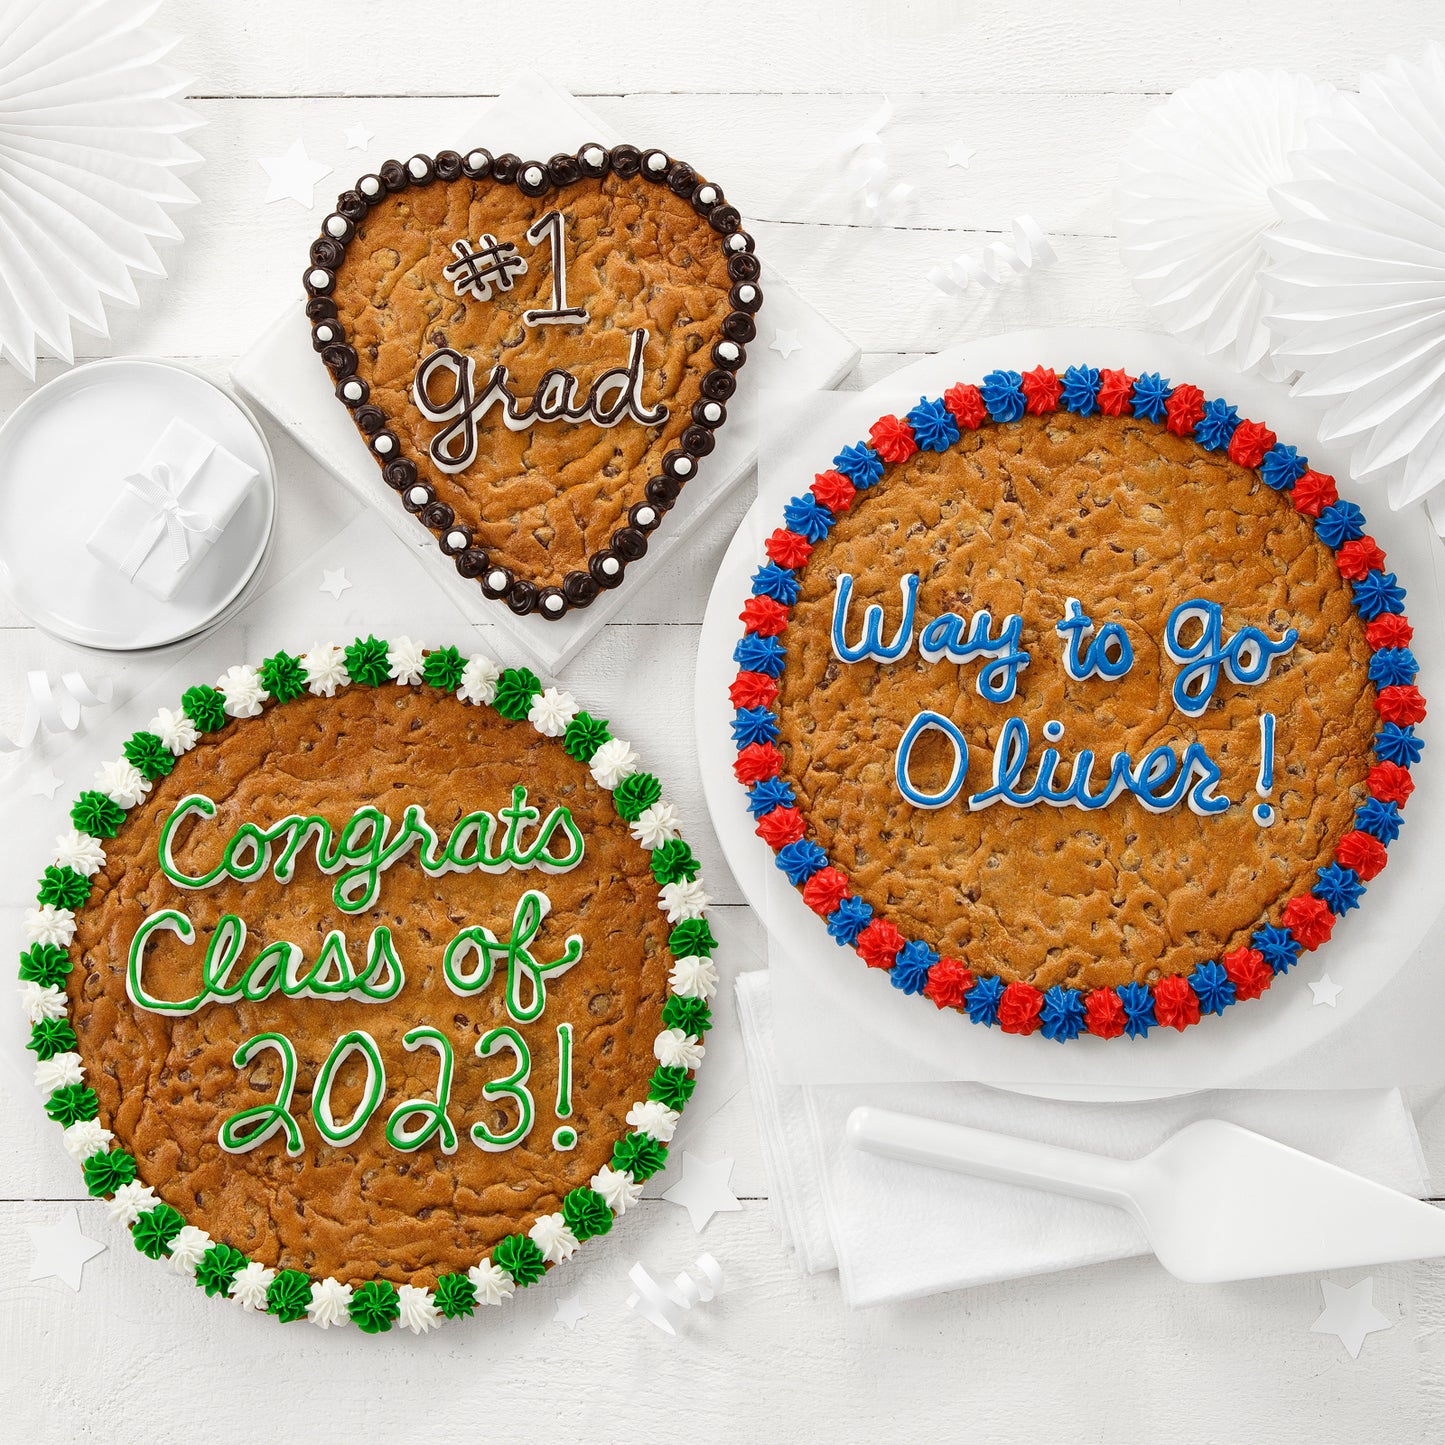 Three custom cookie cakes